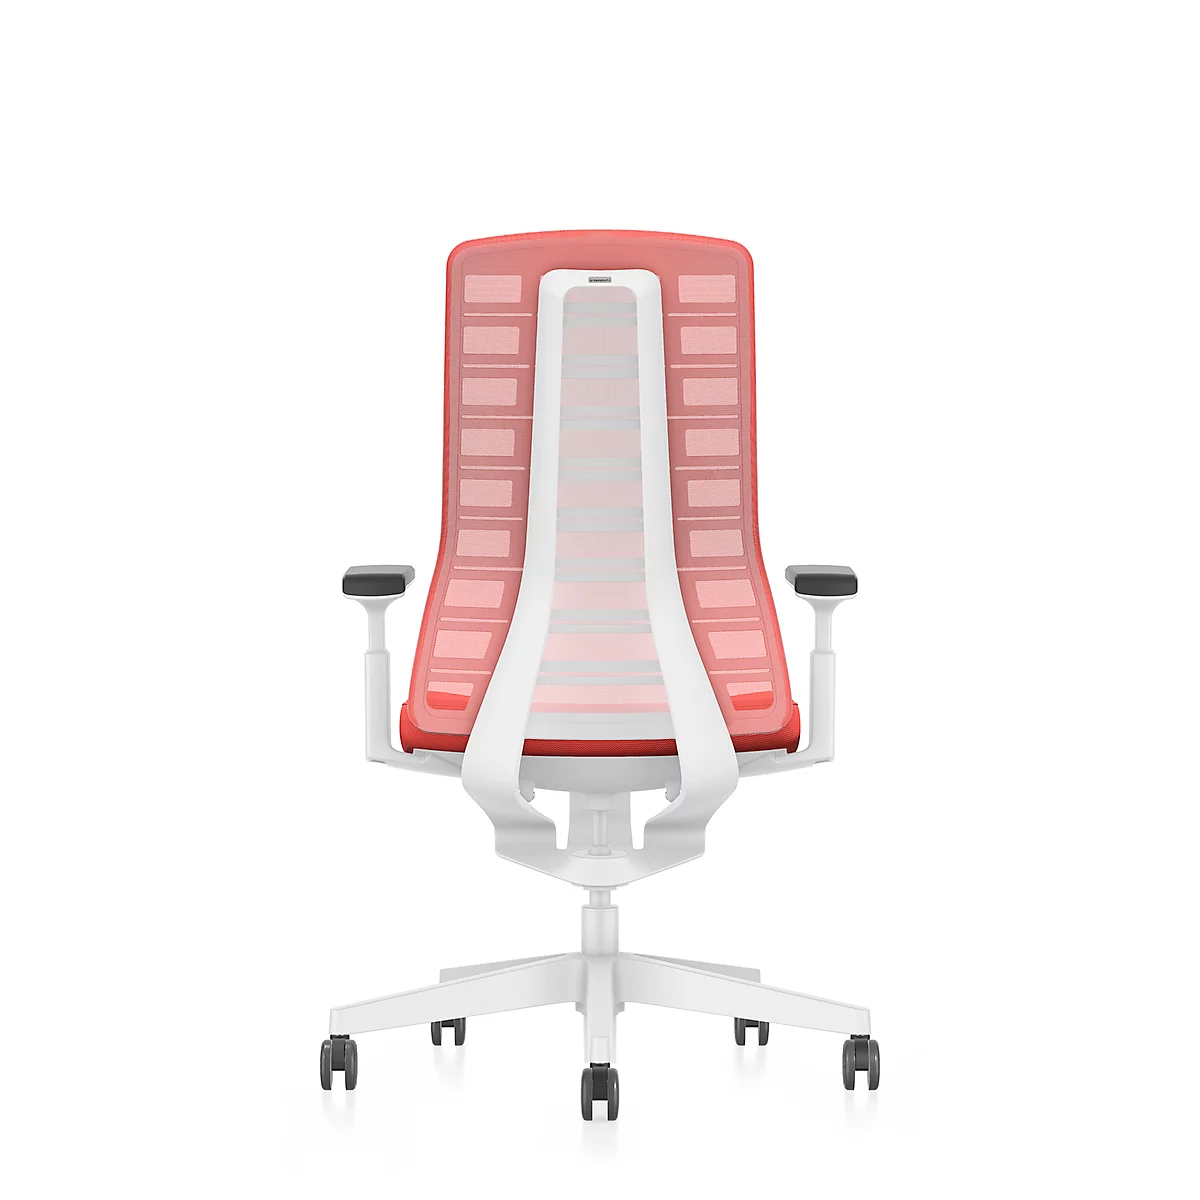 Interstuhl Bürostuhl PUREis3, verstellbare Armlehnen, 3D-Auto-Synchronmechanik, Muldensitz, Netzrücken, feuerrot/weiß